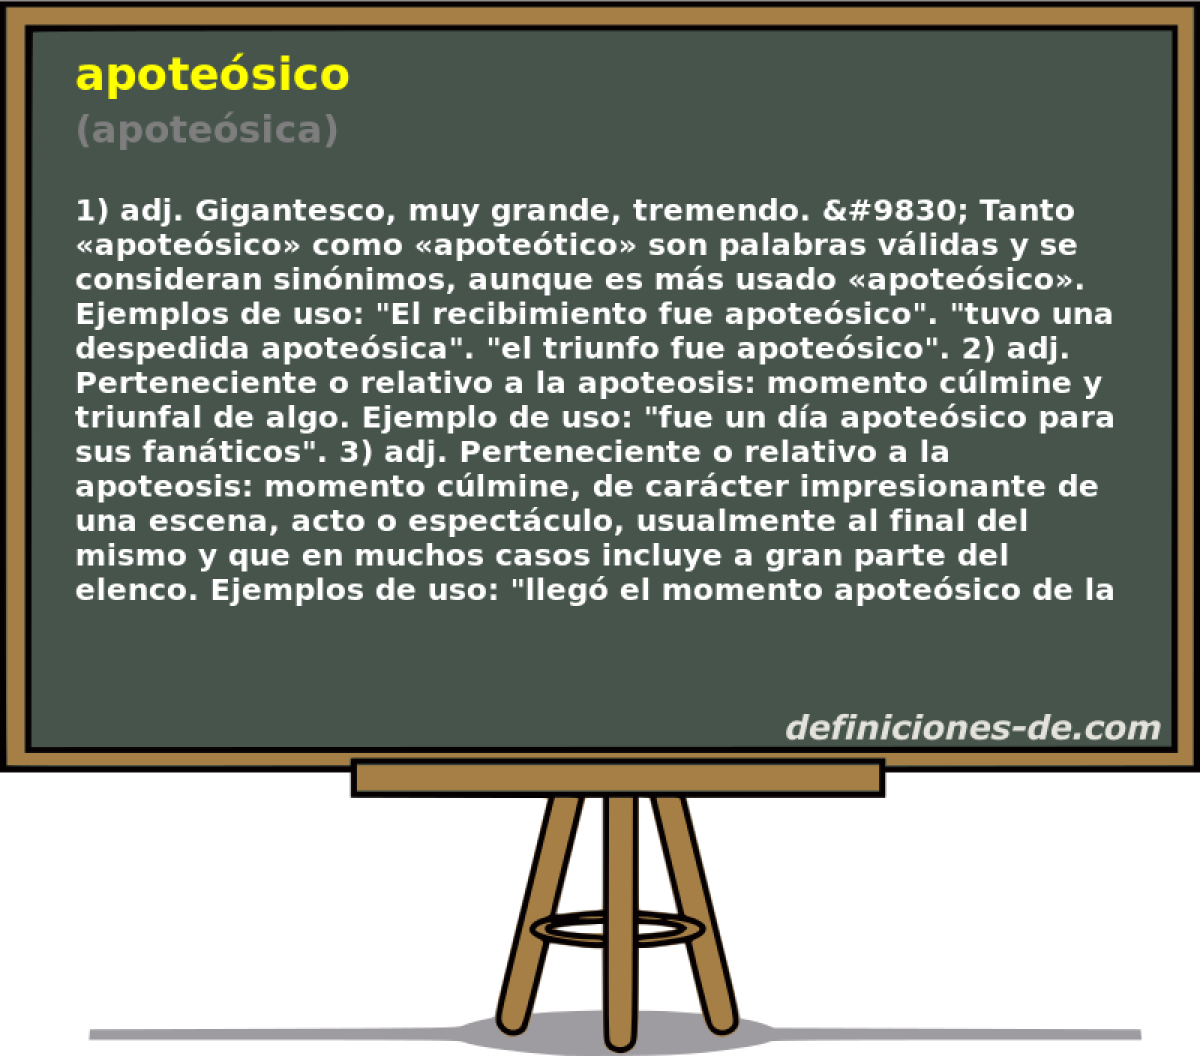 apotesico (apotesica)